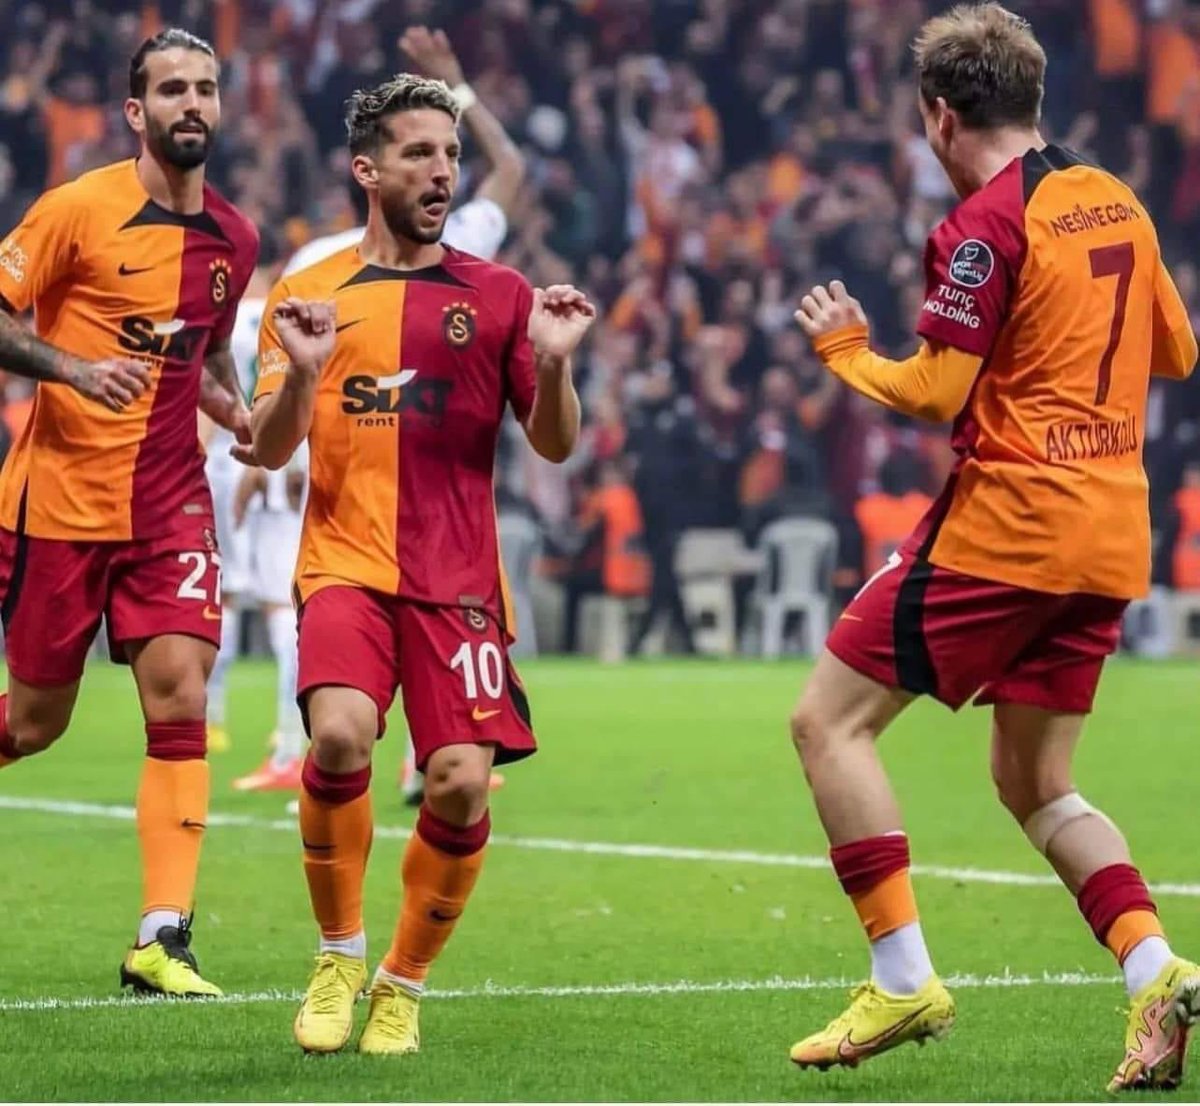 💛❤️💛

Şampiyonluk İçin Vur Galatasaray’ım 🦁 

BAM BAMM BAMMM 💥💥

#GSvsSVS 🏆